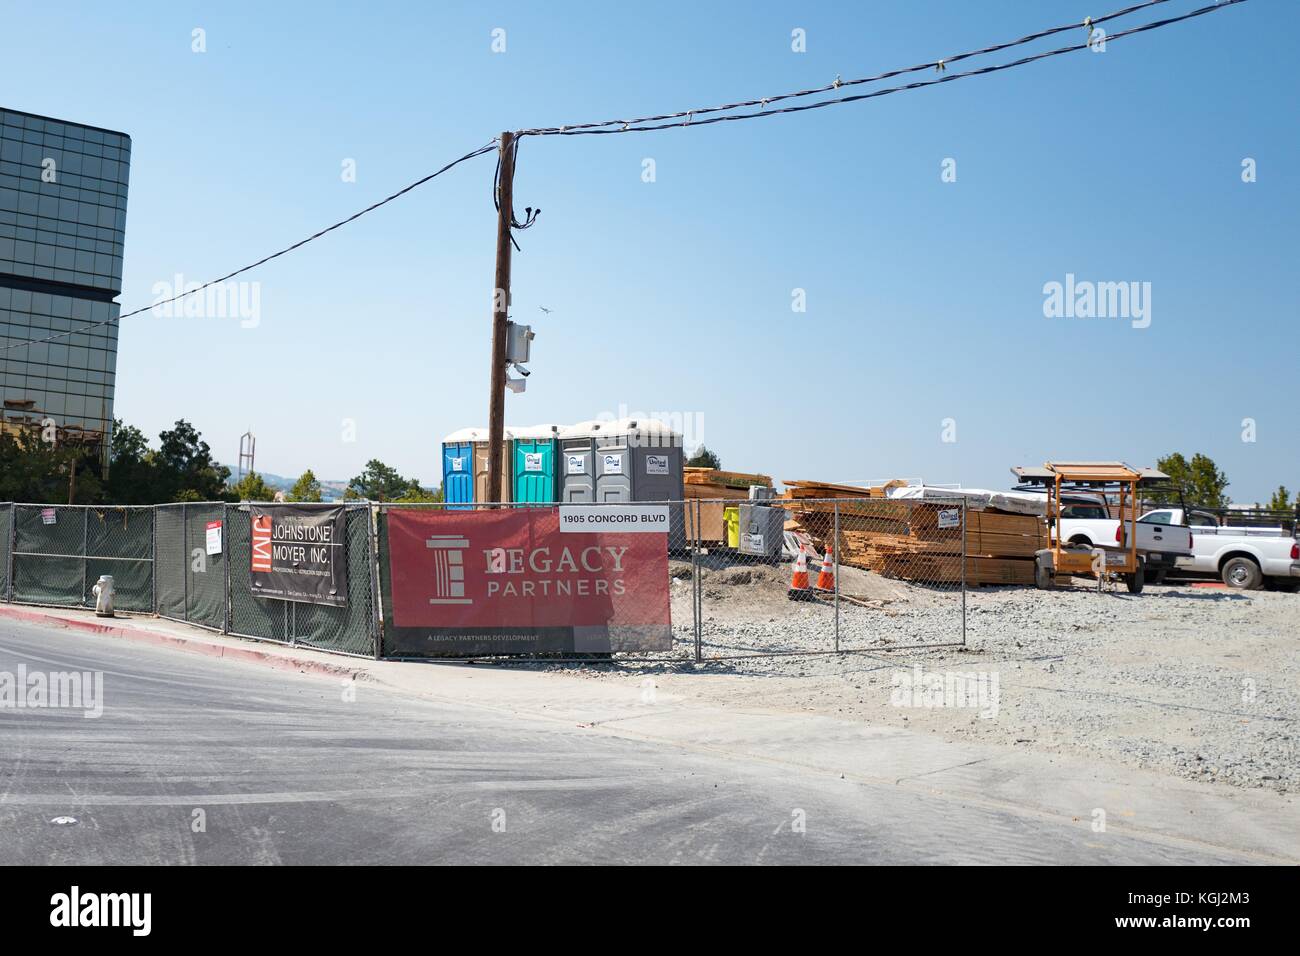 Site de construction avec la signalisation pour Legacy Partners dans le centre-ville de Concord, Californie, le 8 septembre 2017. L'accord est considéré comme l'un des villes plus forte croissance dans la région de san francisco. Banque D'Images